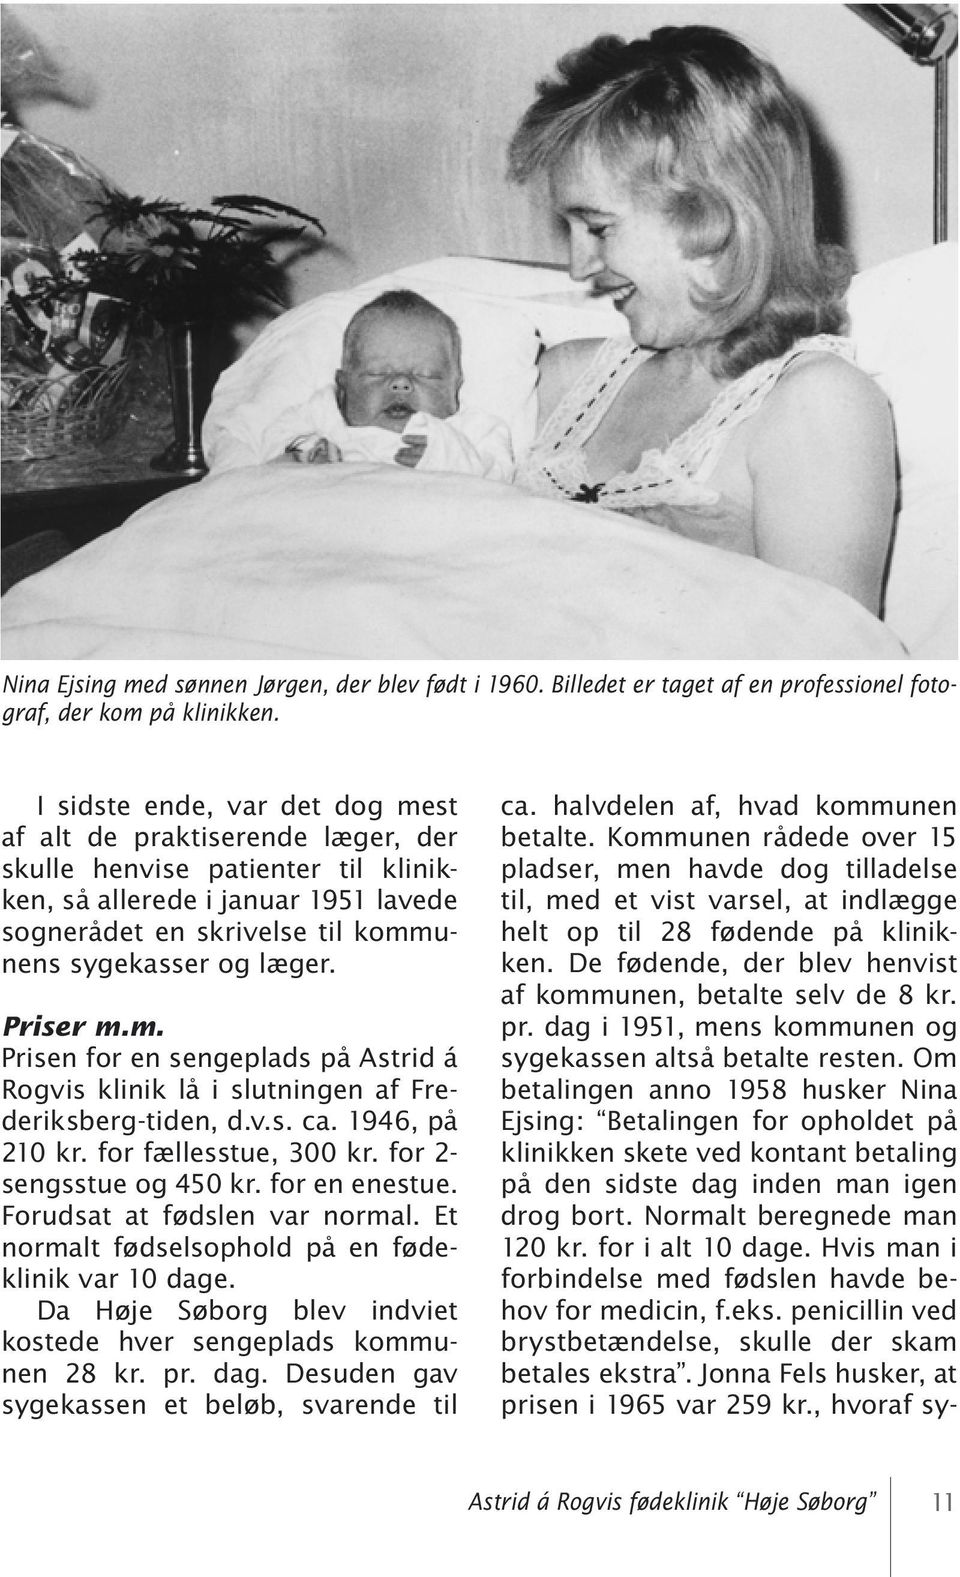 Priser m.m. Prisen for en sengeplads på Astrid á Rogvis klinik lå i slutningen af Frederiksberg-tiden, d.v.s. ca. 1946, på 210 kr. for fællesstue, 300 kr. for 2- sengsstue og 450 kr. for en enestue.